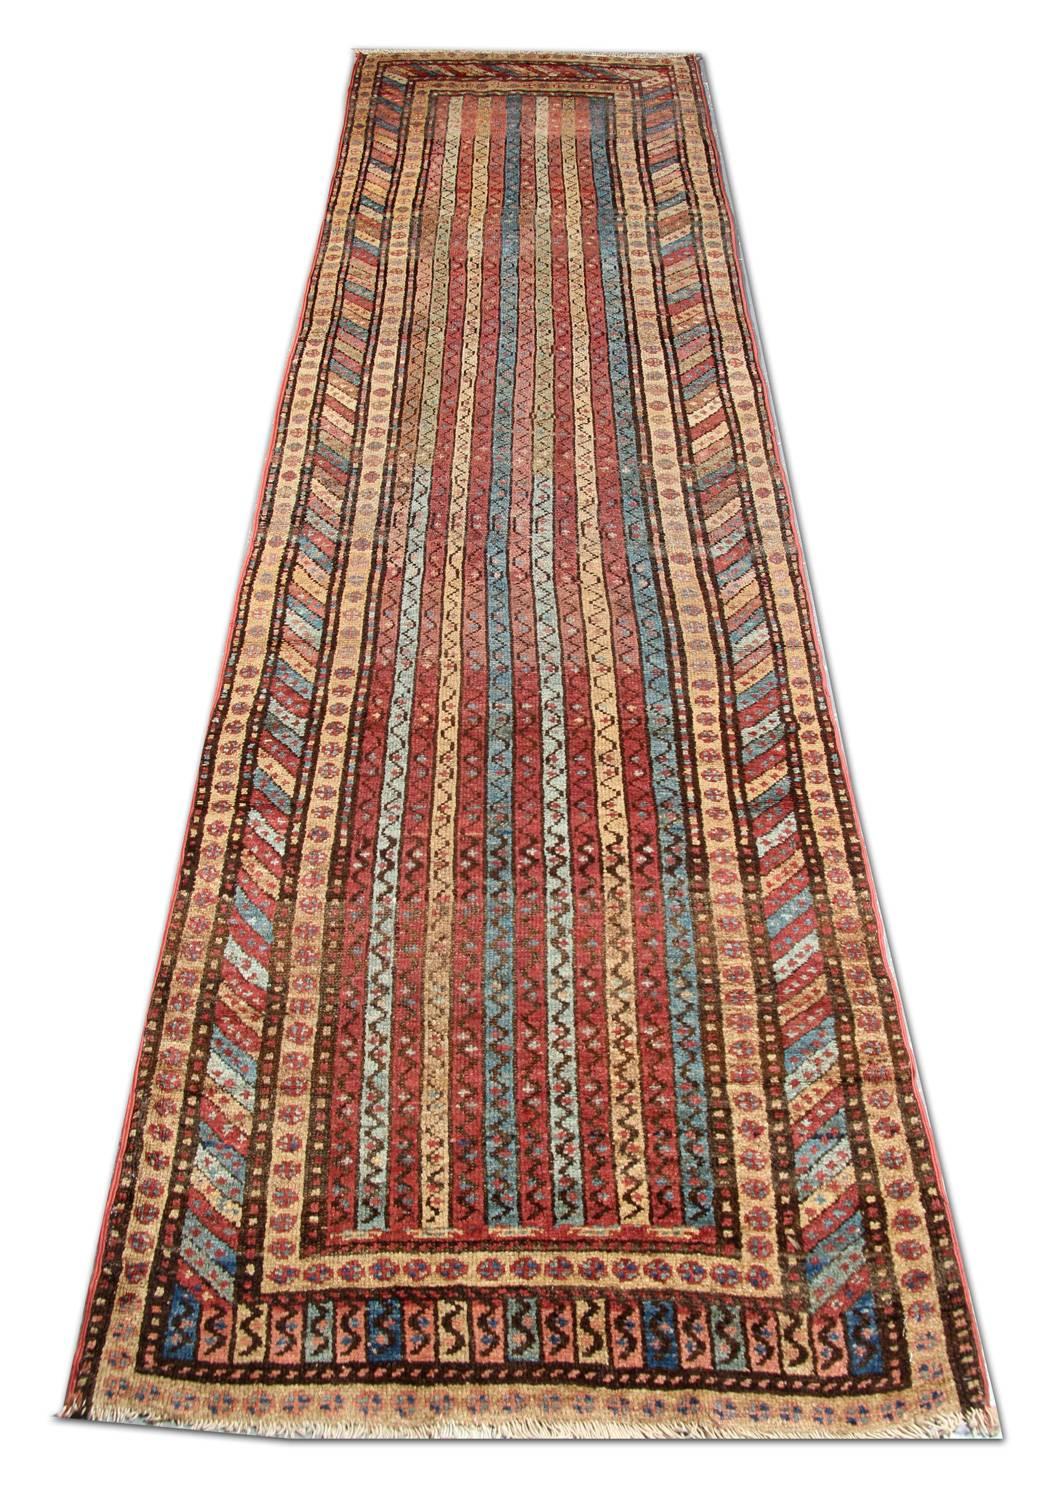 Dieser handgefertigte Orientteppich, der aus traditionellen Nomadenteppichen hervorgegangen ist, ist ein antiker Streifenteppich aus Schirwan mit einer spektakulären Anordnung von modularen Streifen und klassischen Bordürenmotiven, die in Teppichen